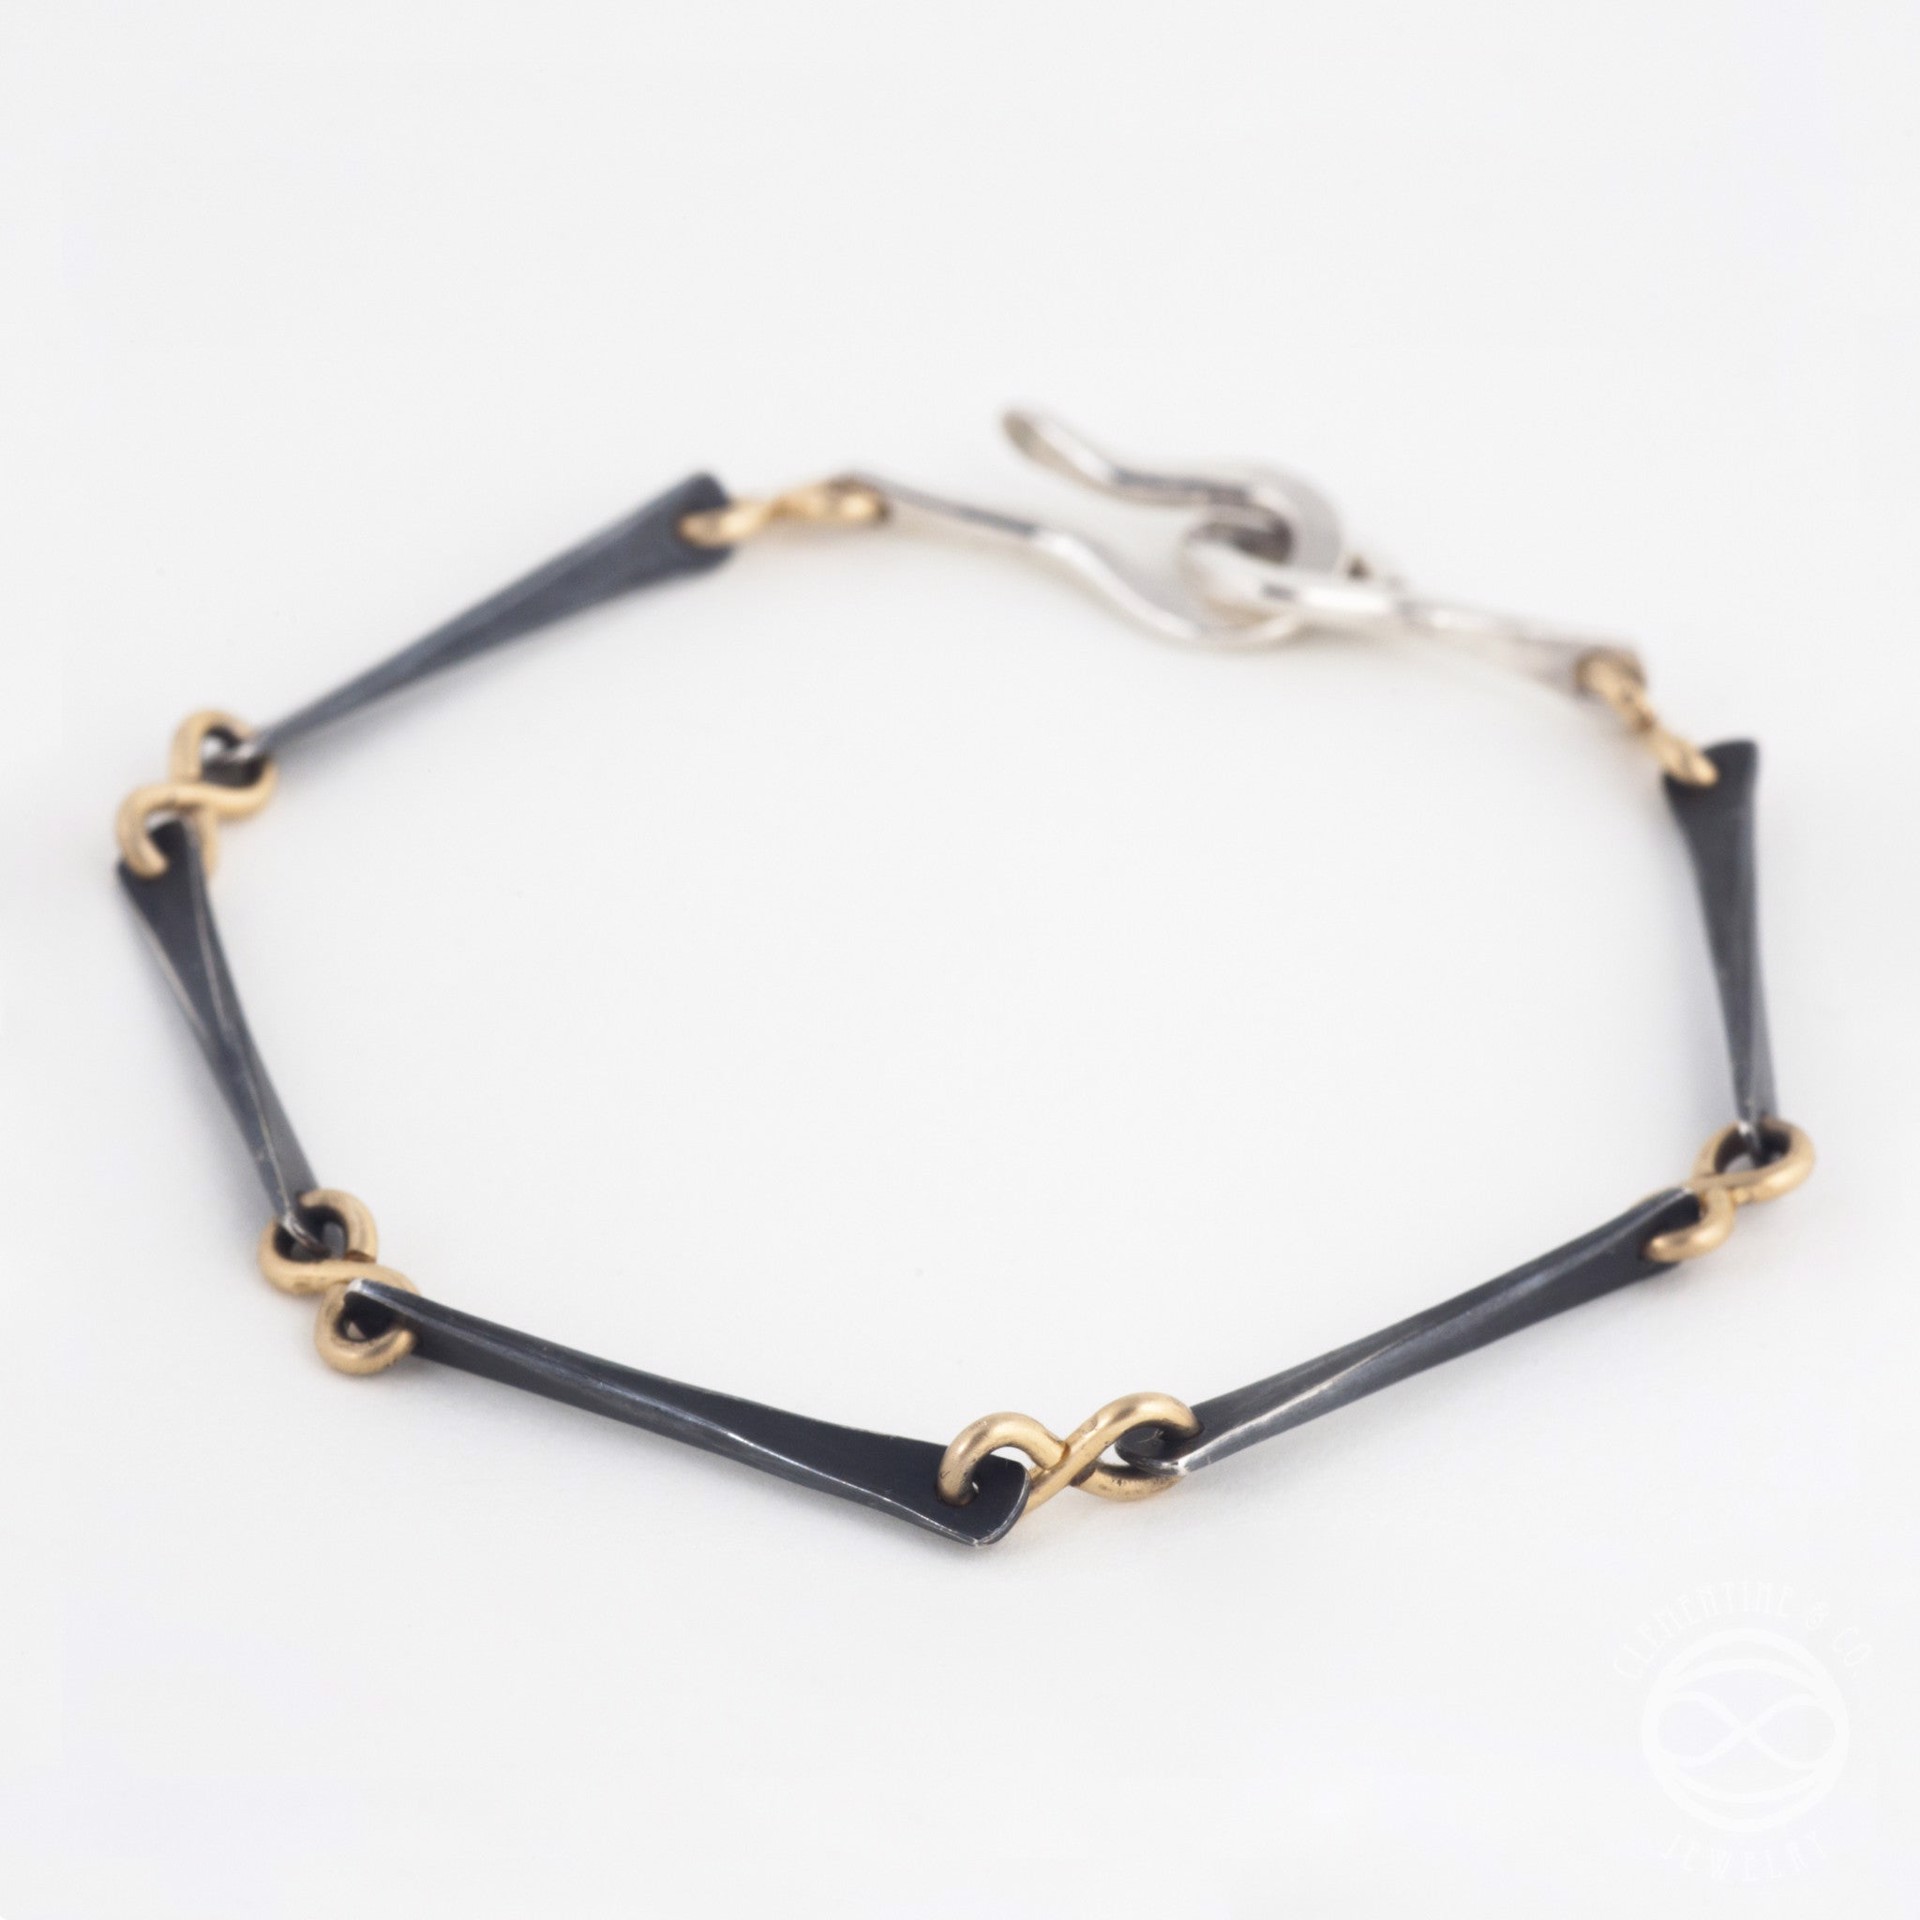 Nexus Bracelet by Clementine & Co. Jewelry